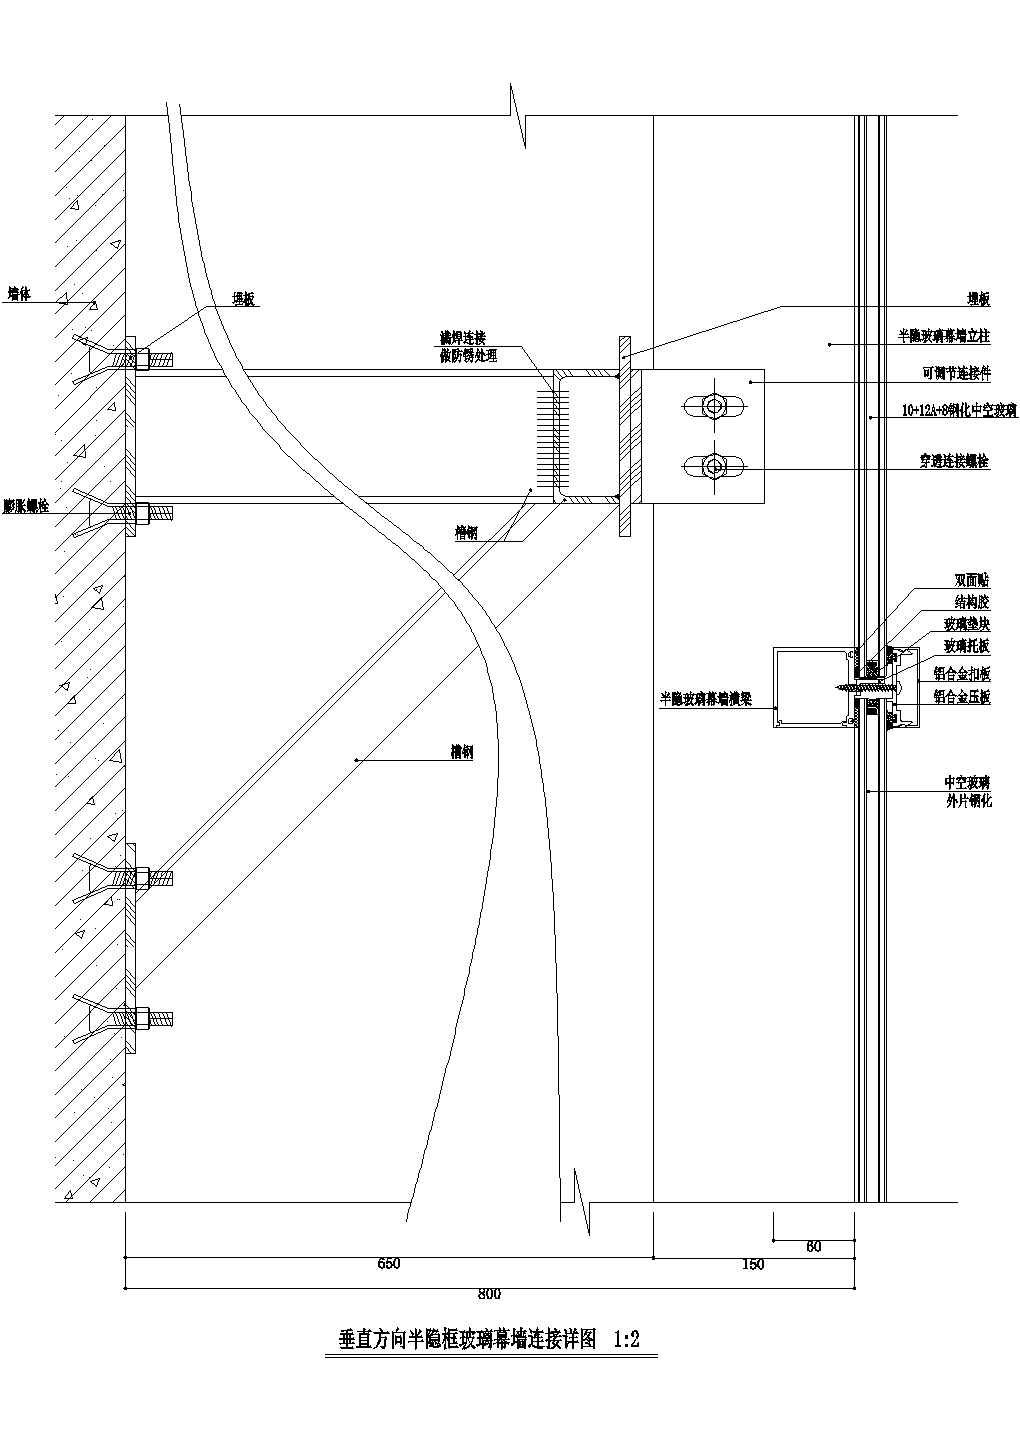 垂直方向半隐框玻璃幕墙连接详图CAD施工图设计